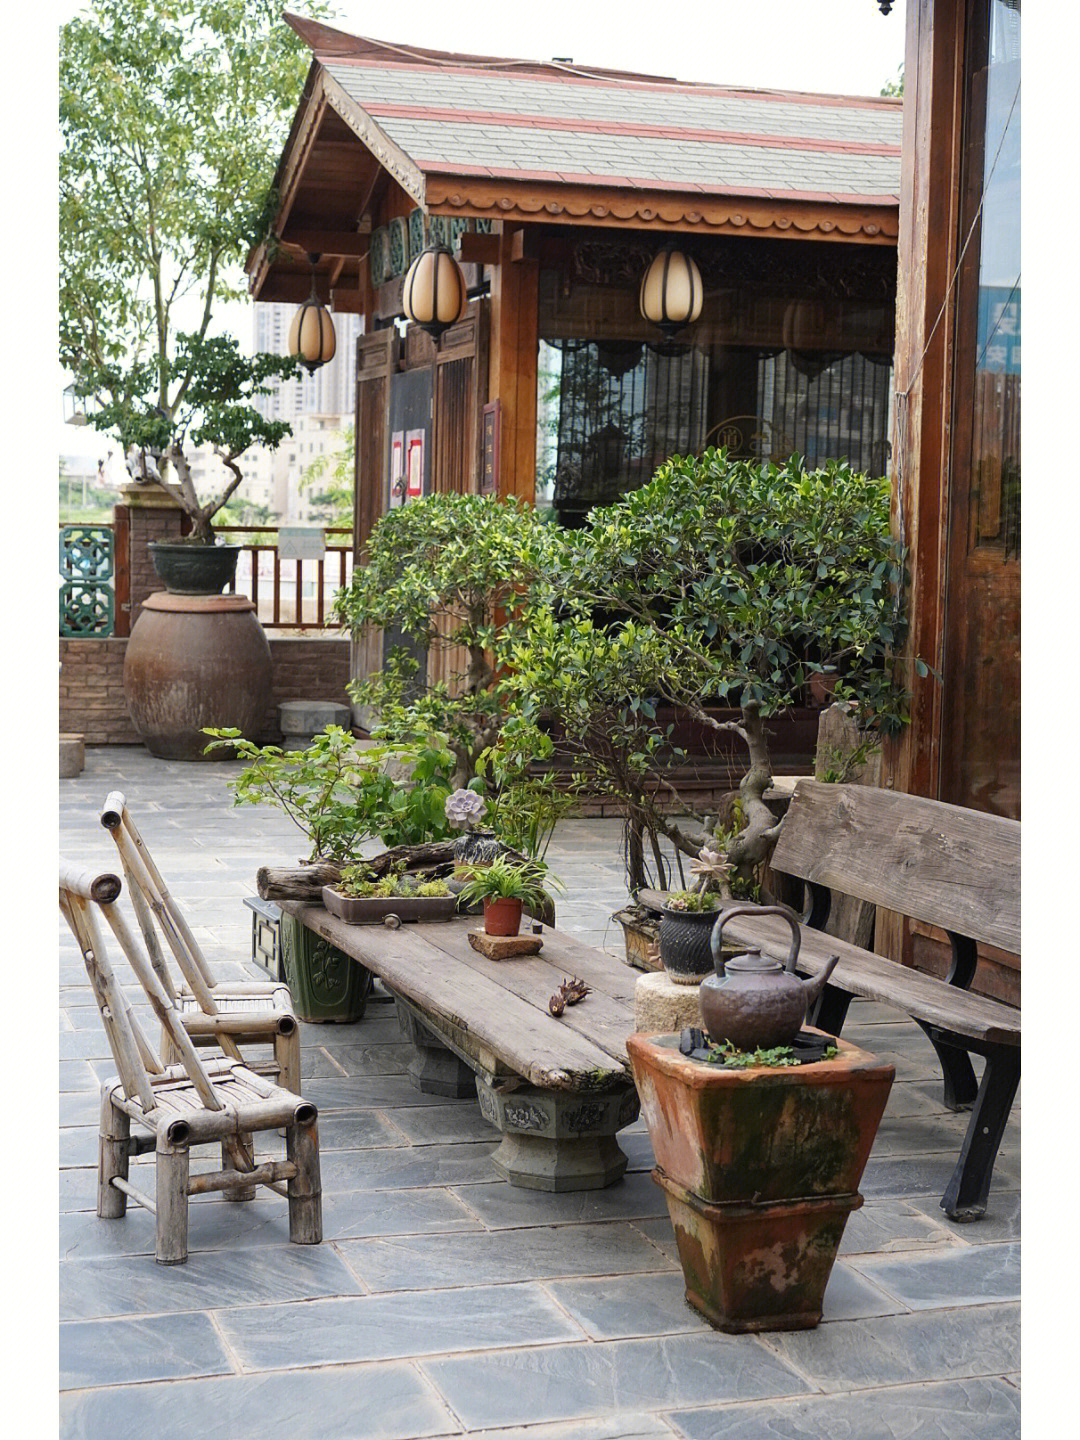 扬州竹院茶室平面图图片